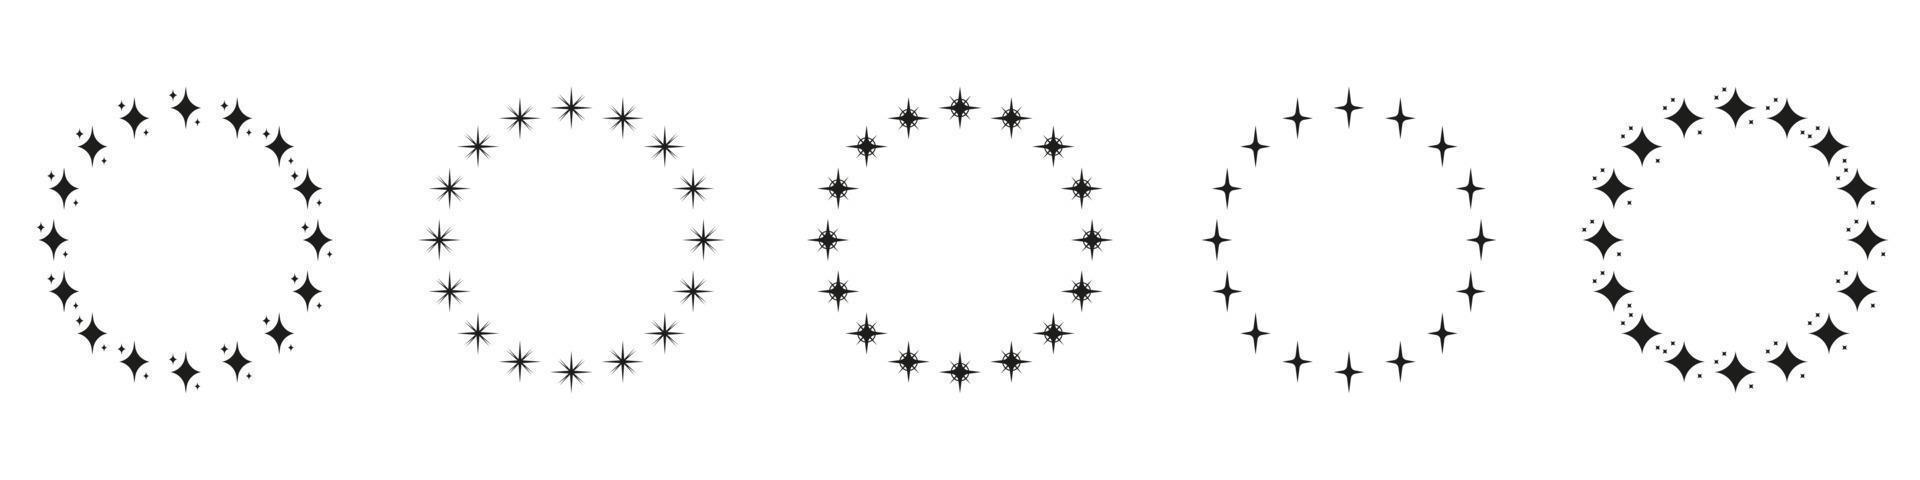 Sterne in Kreisform Silhouette Icon-Set. kreisförmiges Dekor-Ornament-Symbol auf weißem Hintergrund. moderner runder preisrahmen mit schwarzem sternpiktogramm. isolierte Vektorillustration. vektor